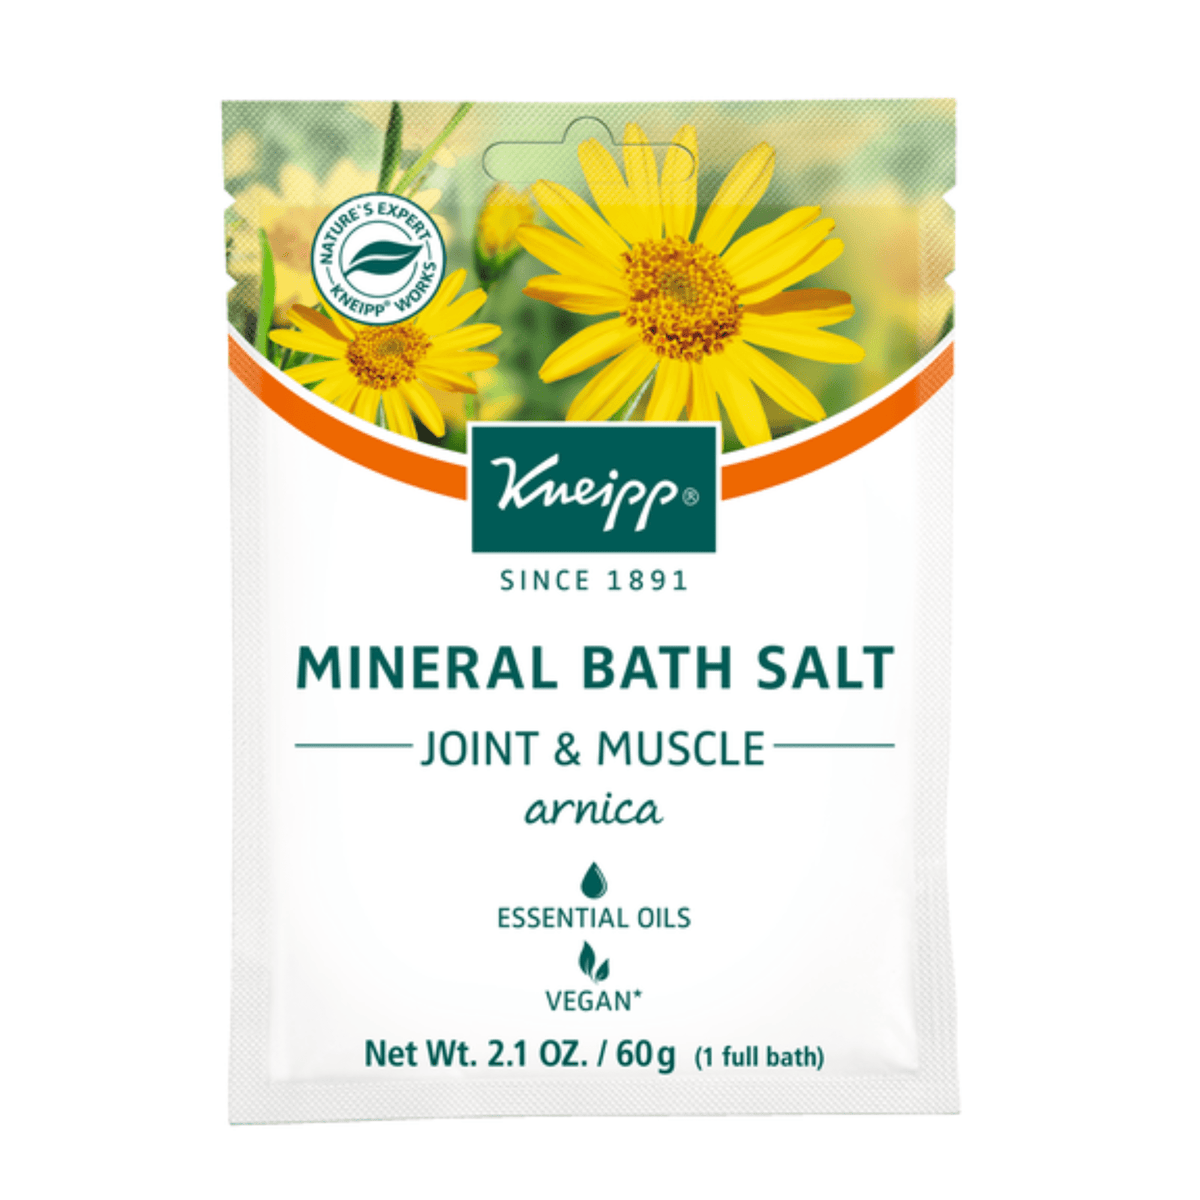 Kneipp Arnica Joint & Muscle Mineral Bath Salt Sachet (2.1 oz) #10067825